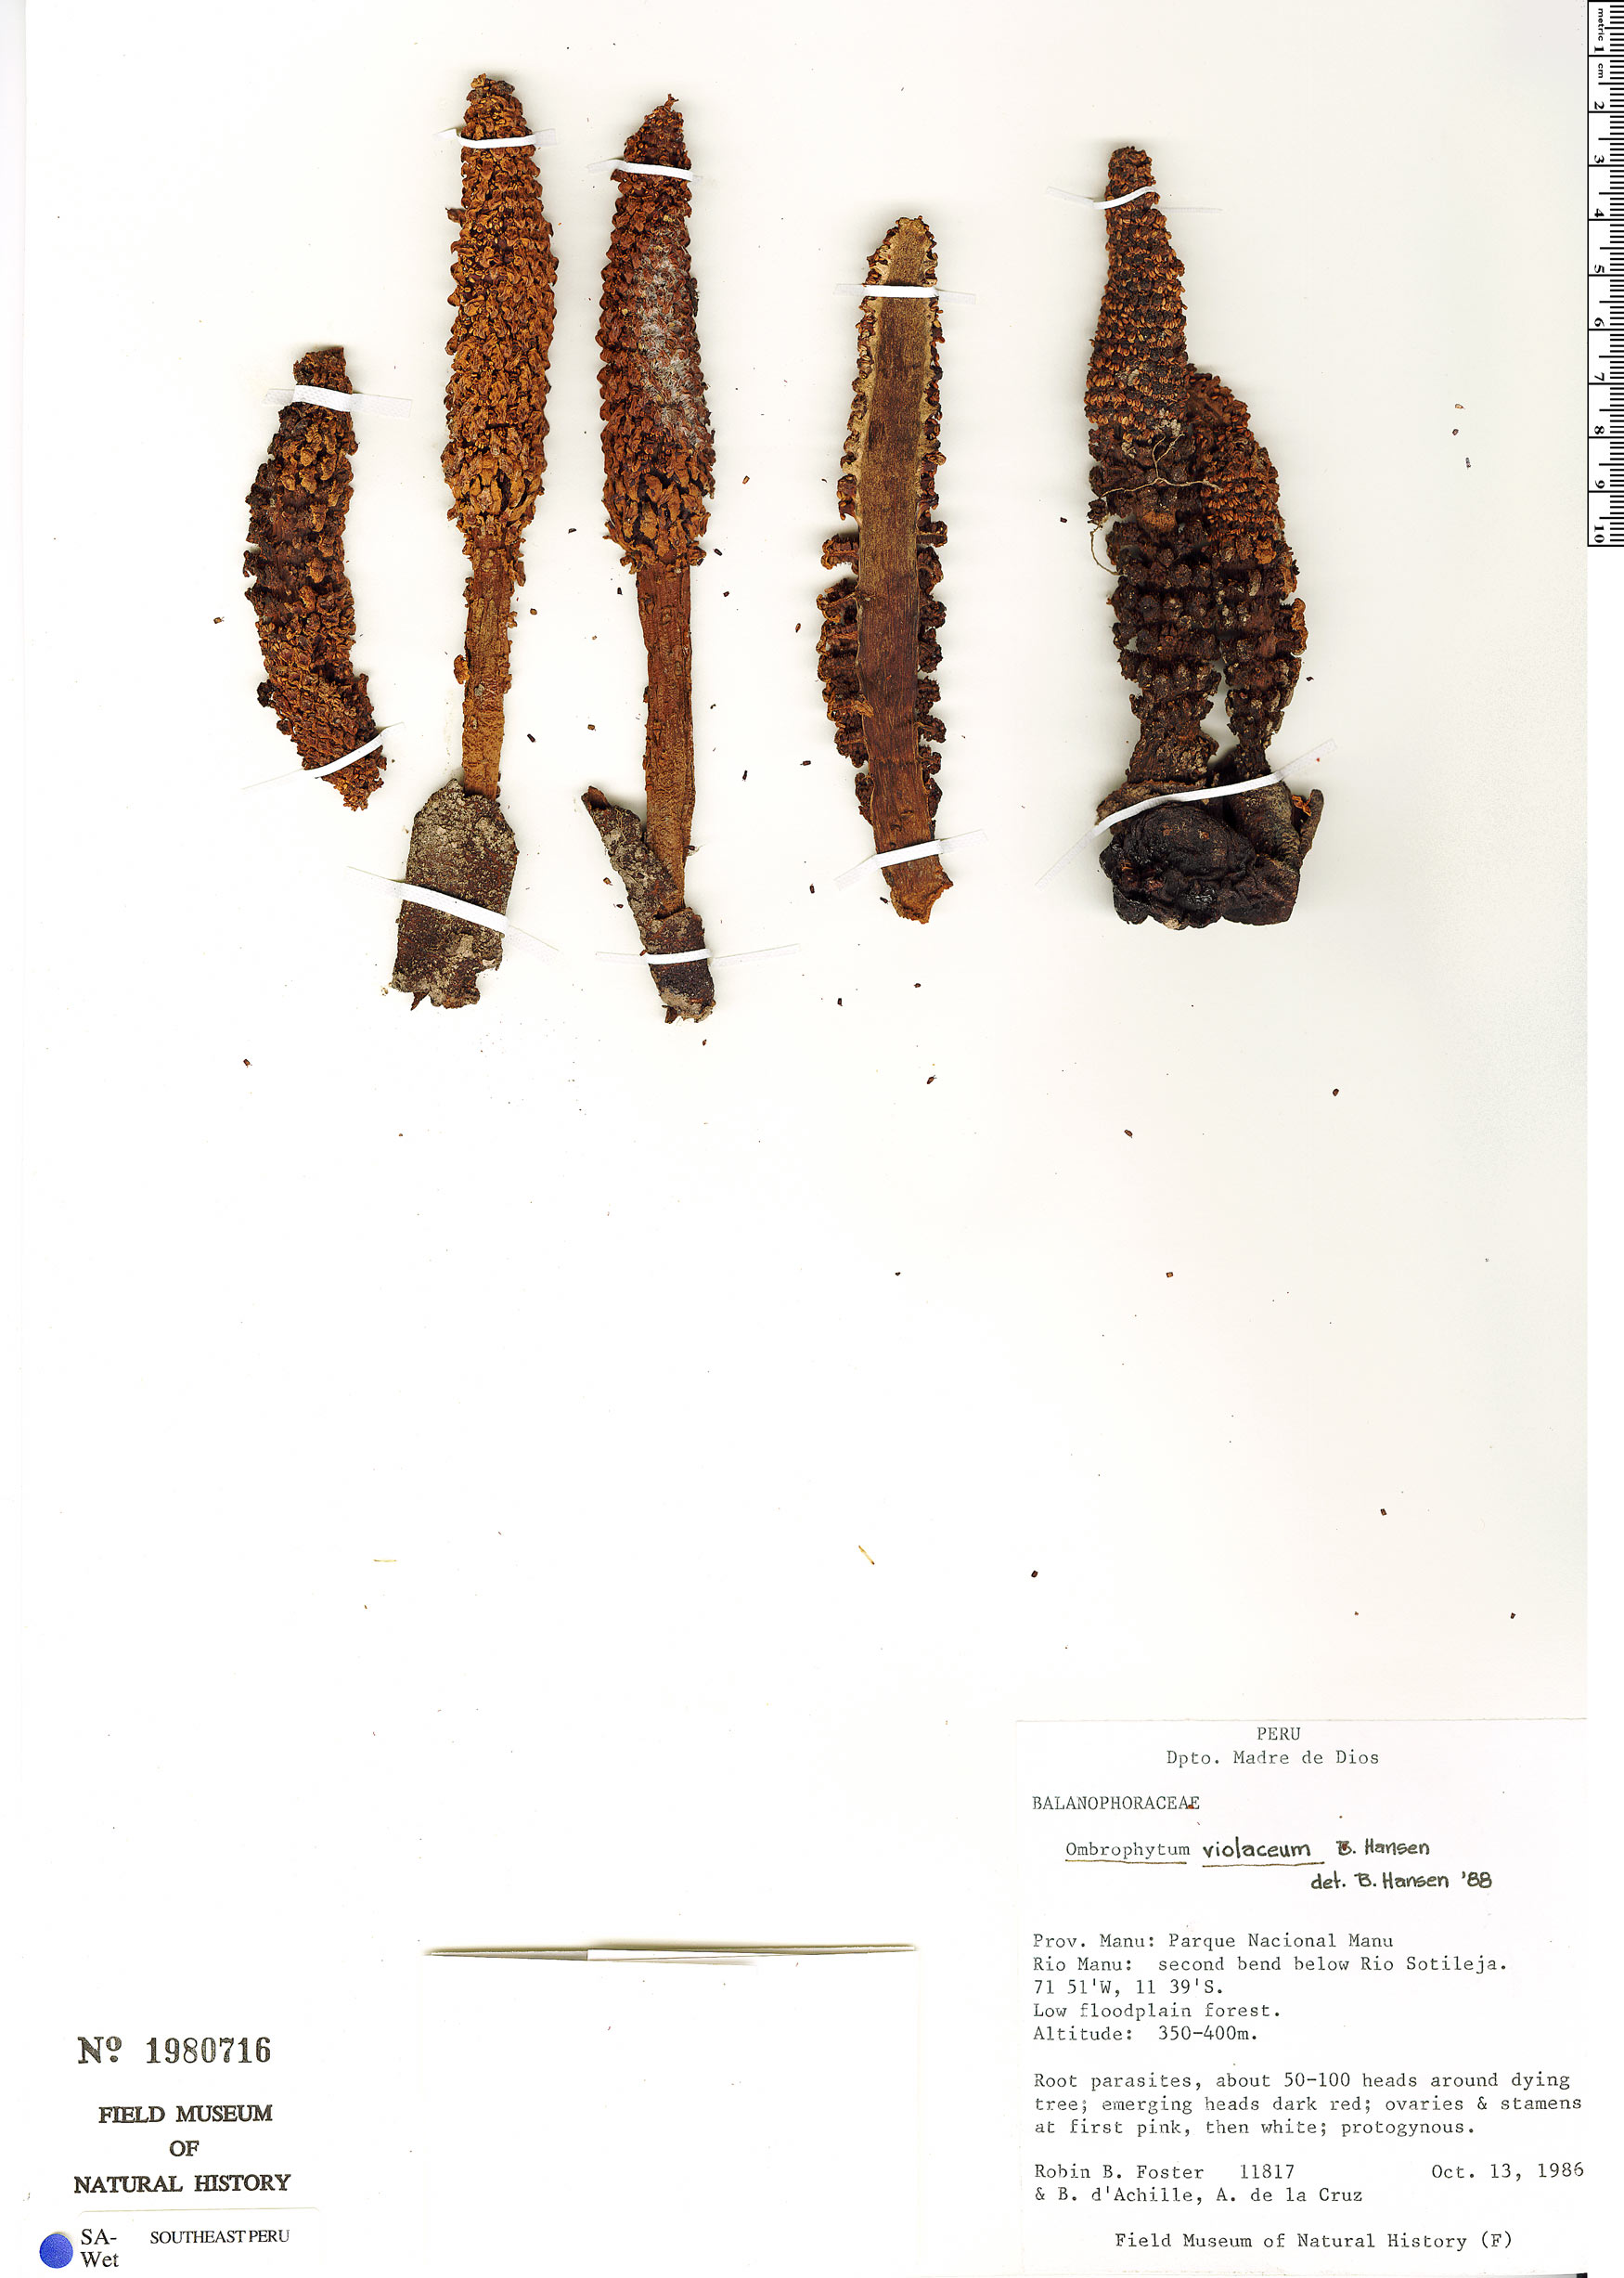 Ombrophytum violaceum image